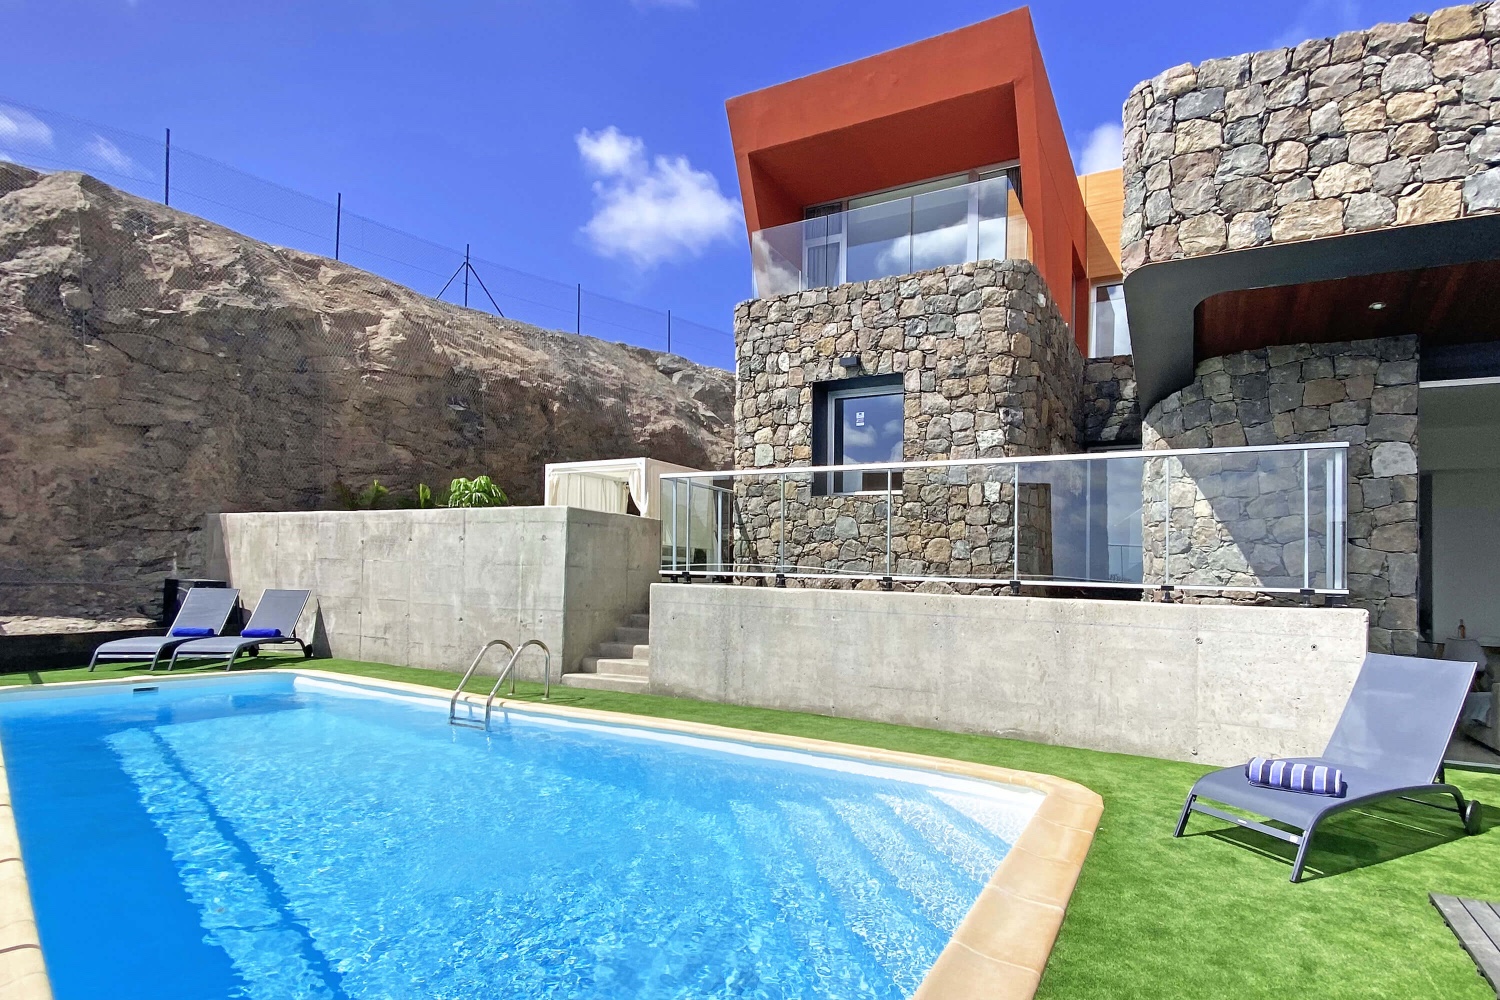 Questa casa vacanze elegante e moderna offre le migliori condizioni per una vacanza rilassante nel soleggiato sud di Gran Canaria con la possibilità di lavorare o studiare a casa.